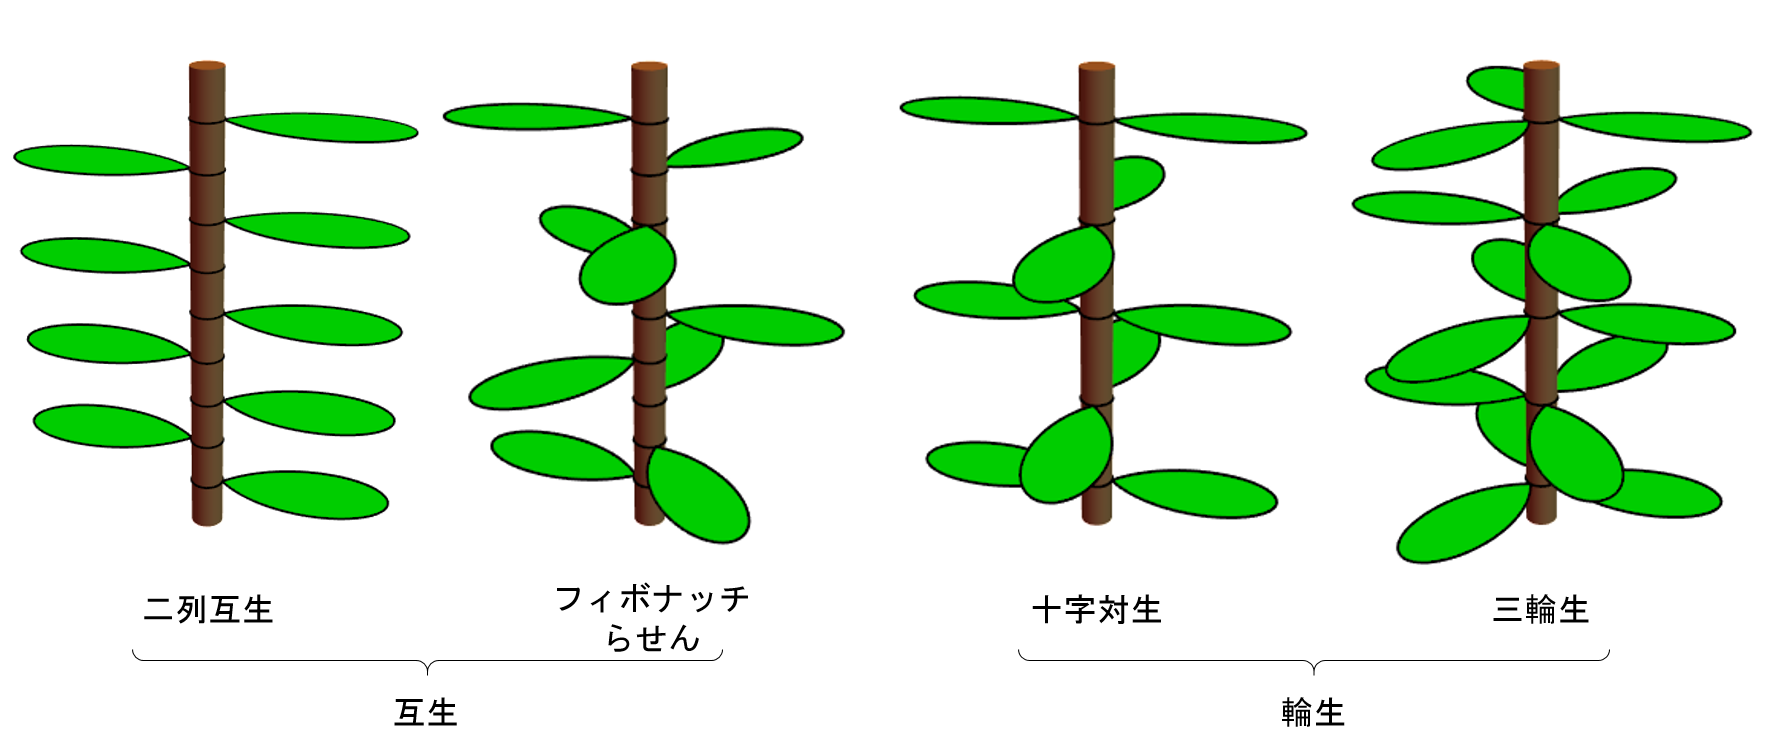 植物の葉の配列における対称性の破れ 東京大学 大学院理学系研究科 理学部